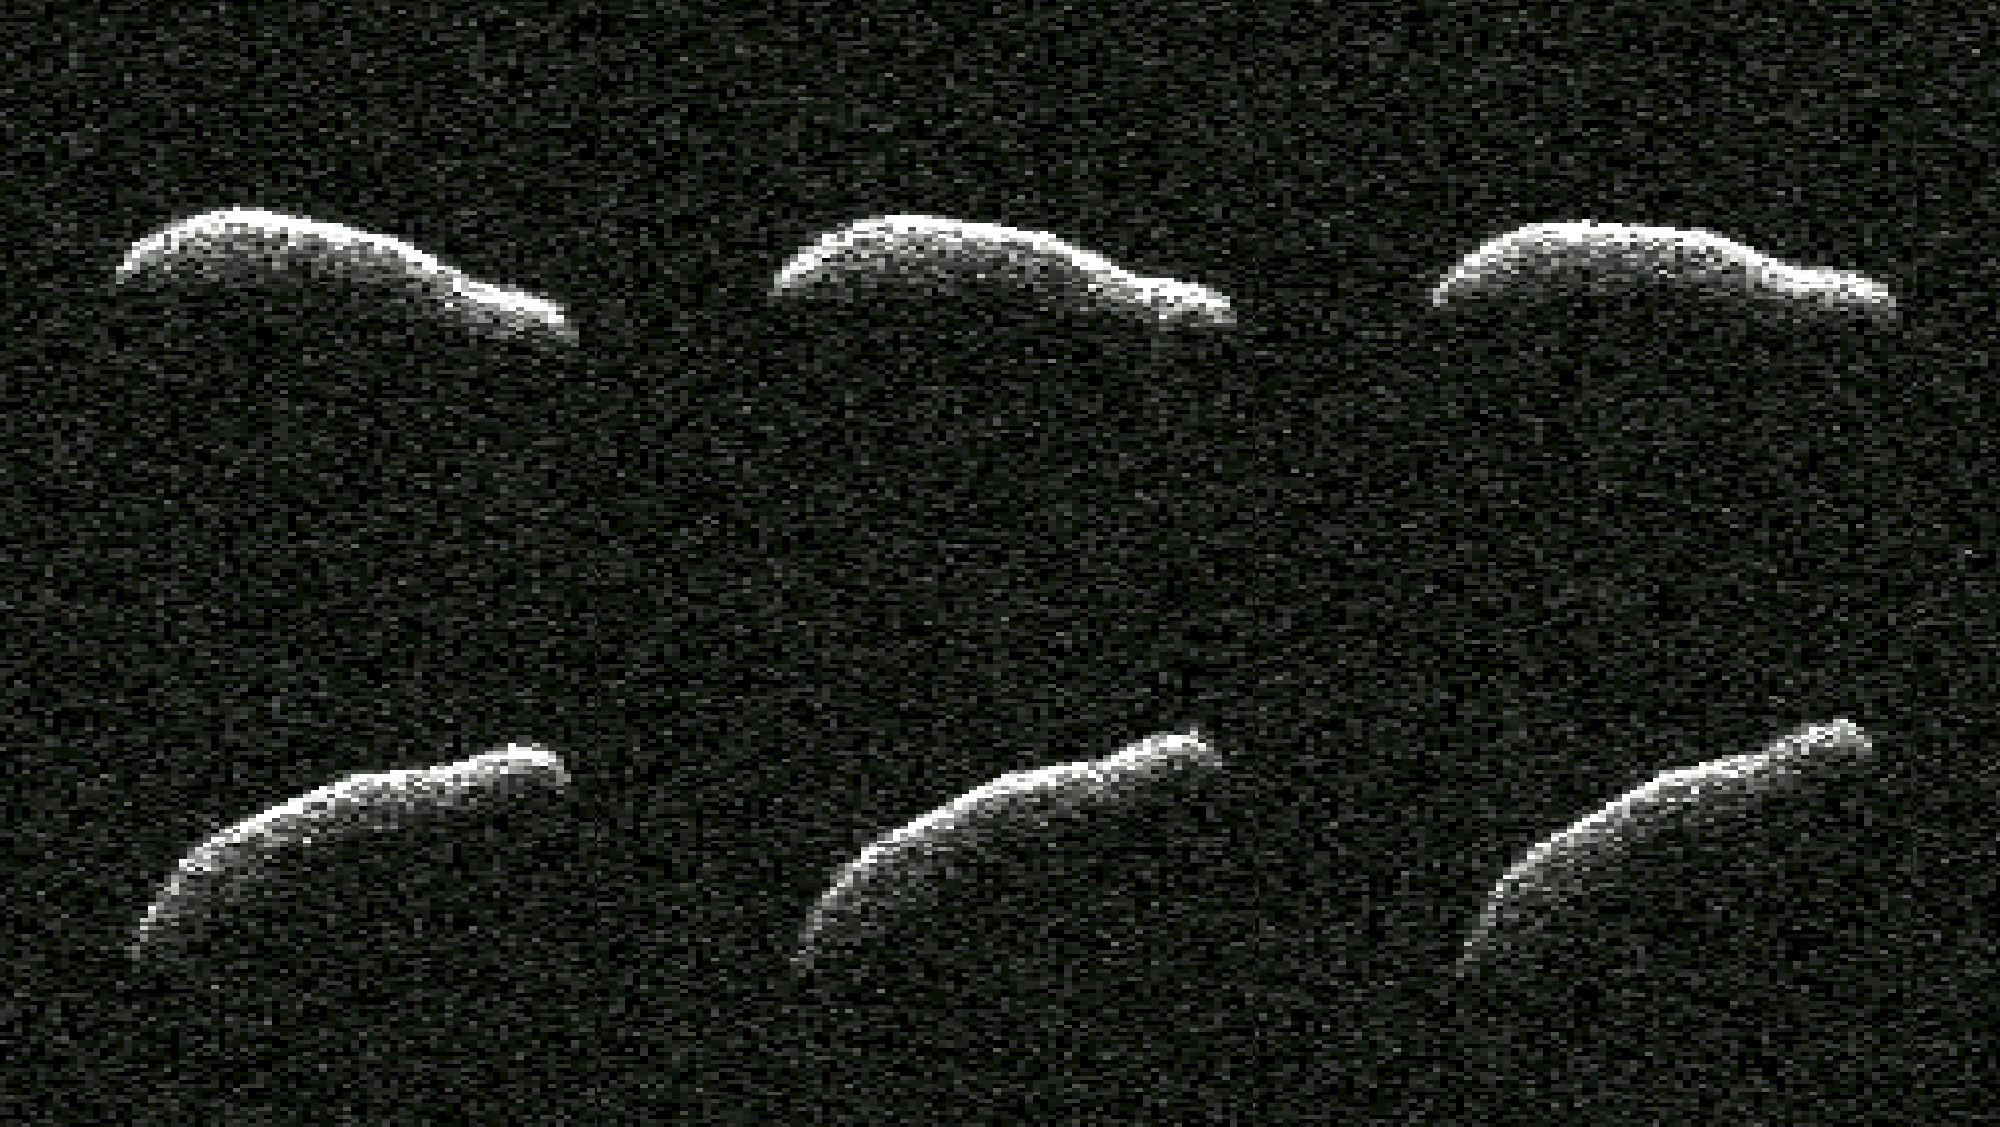 астероид 2011 AG5